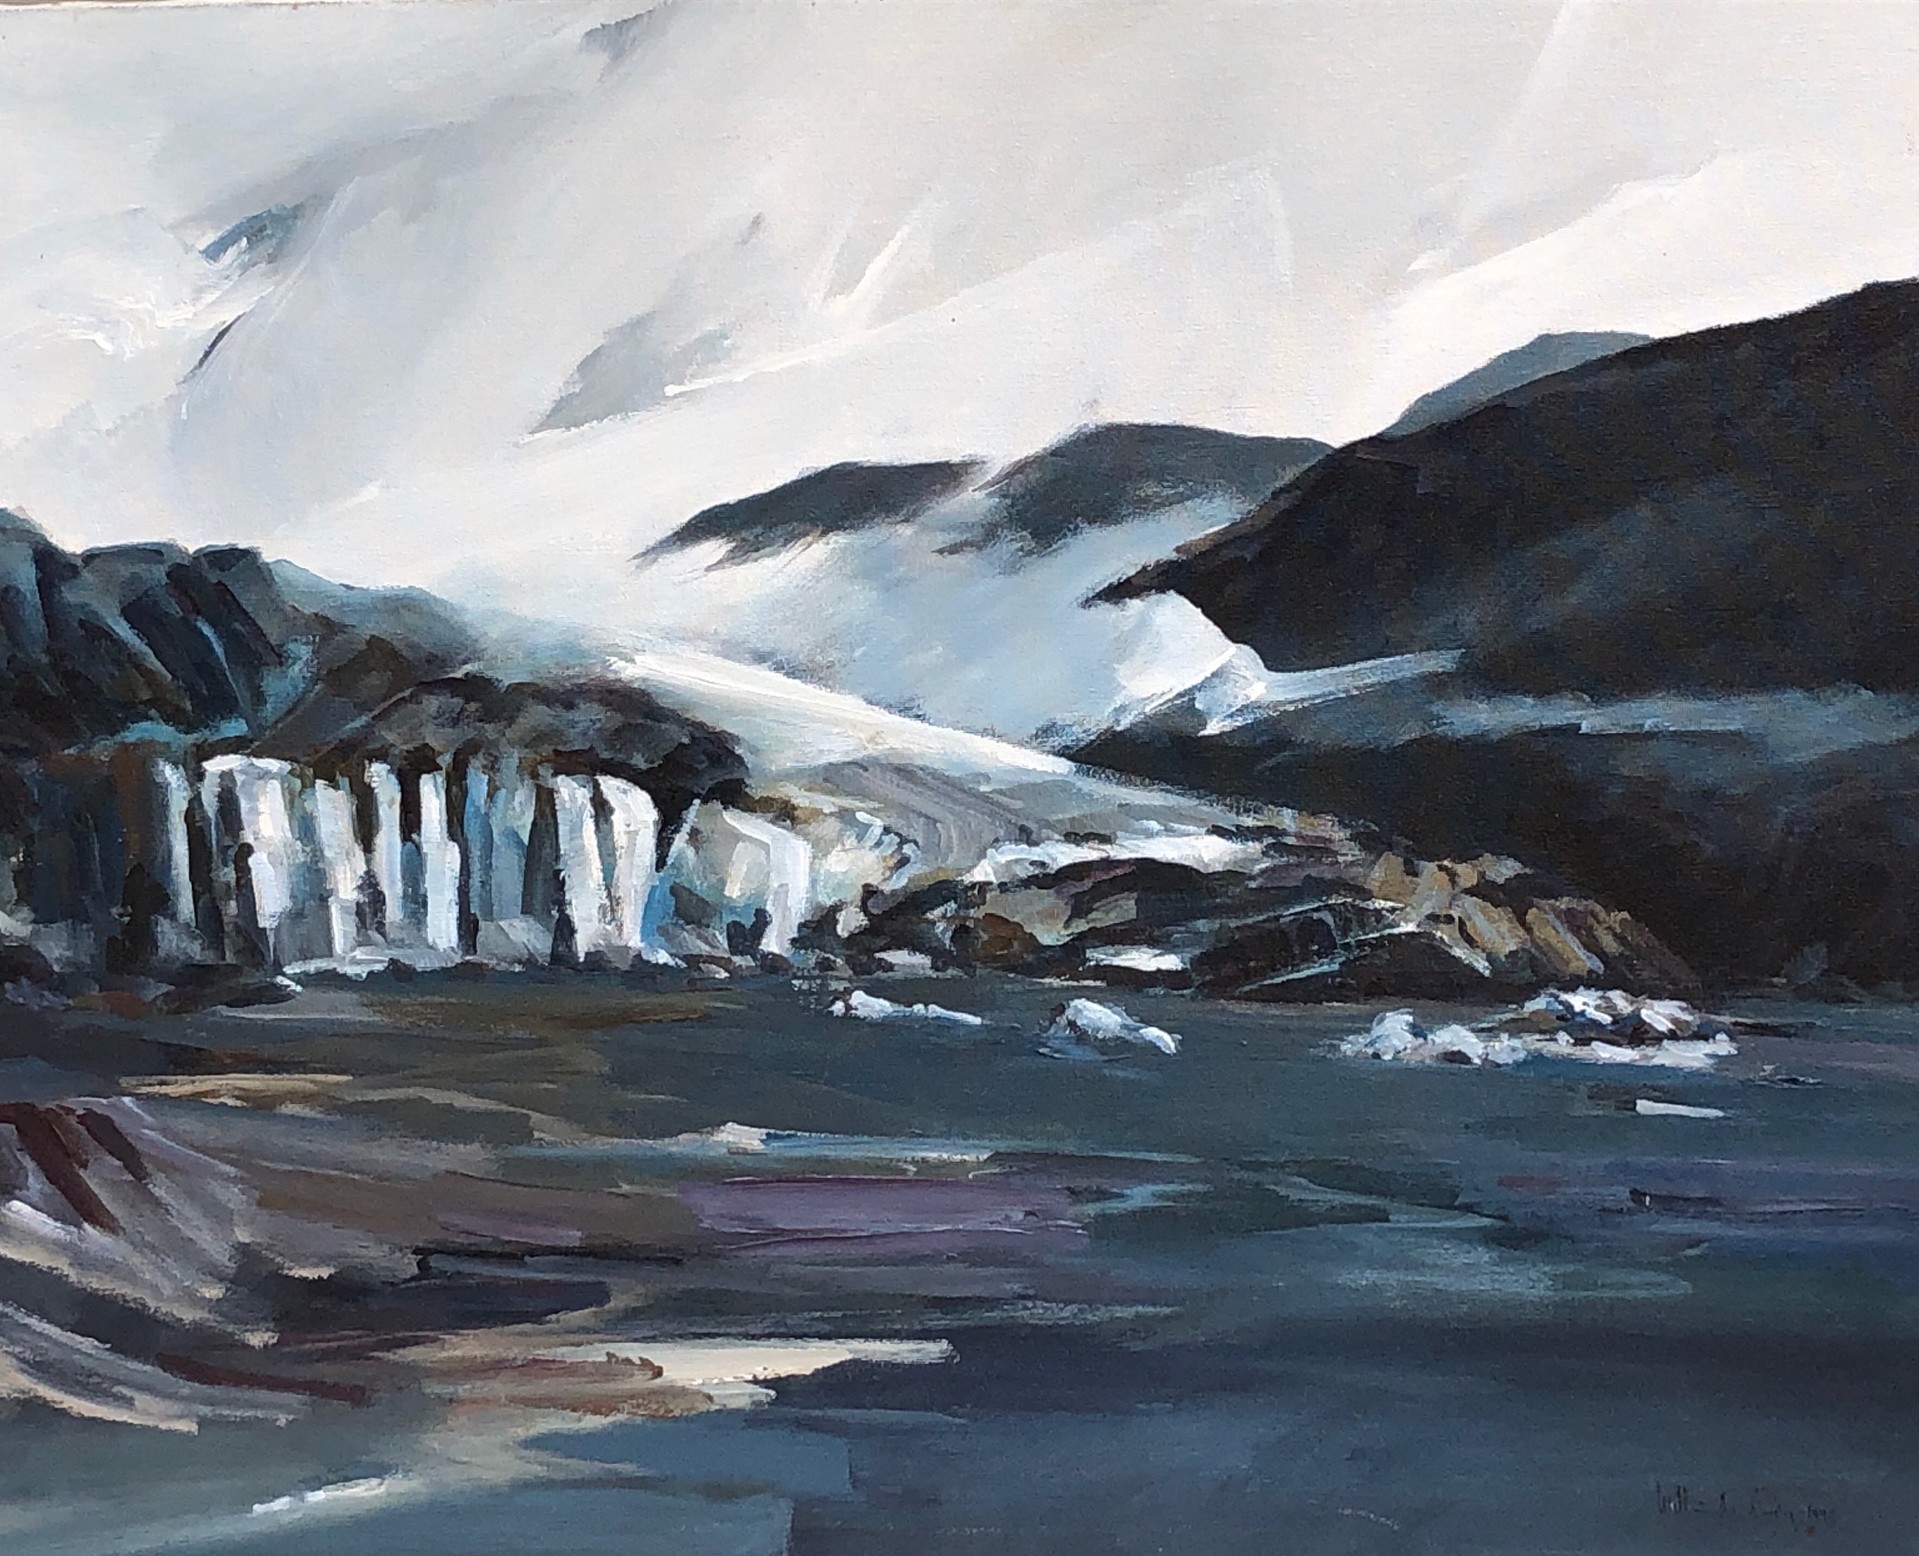 Glacier by William Crosby - Alaskan Work